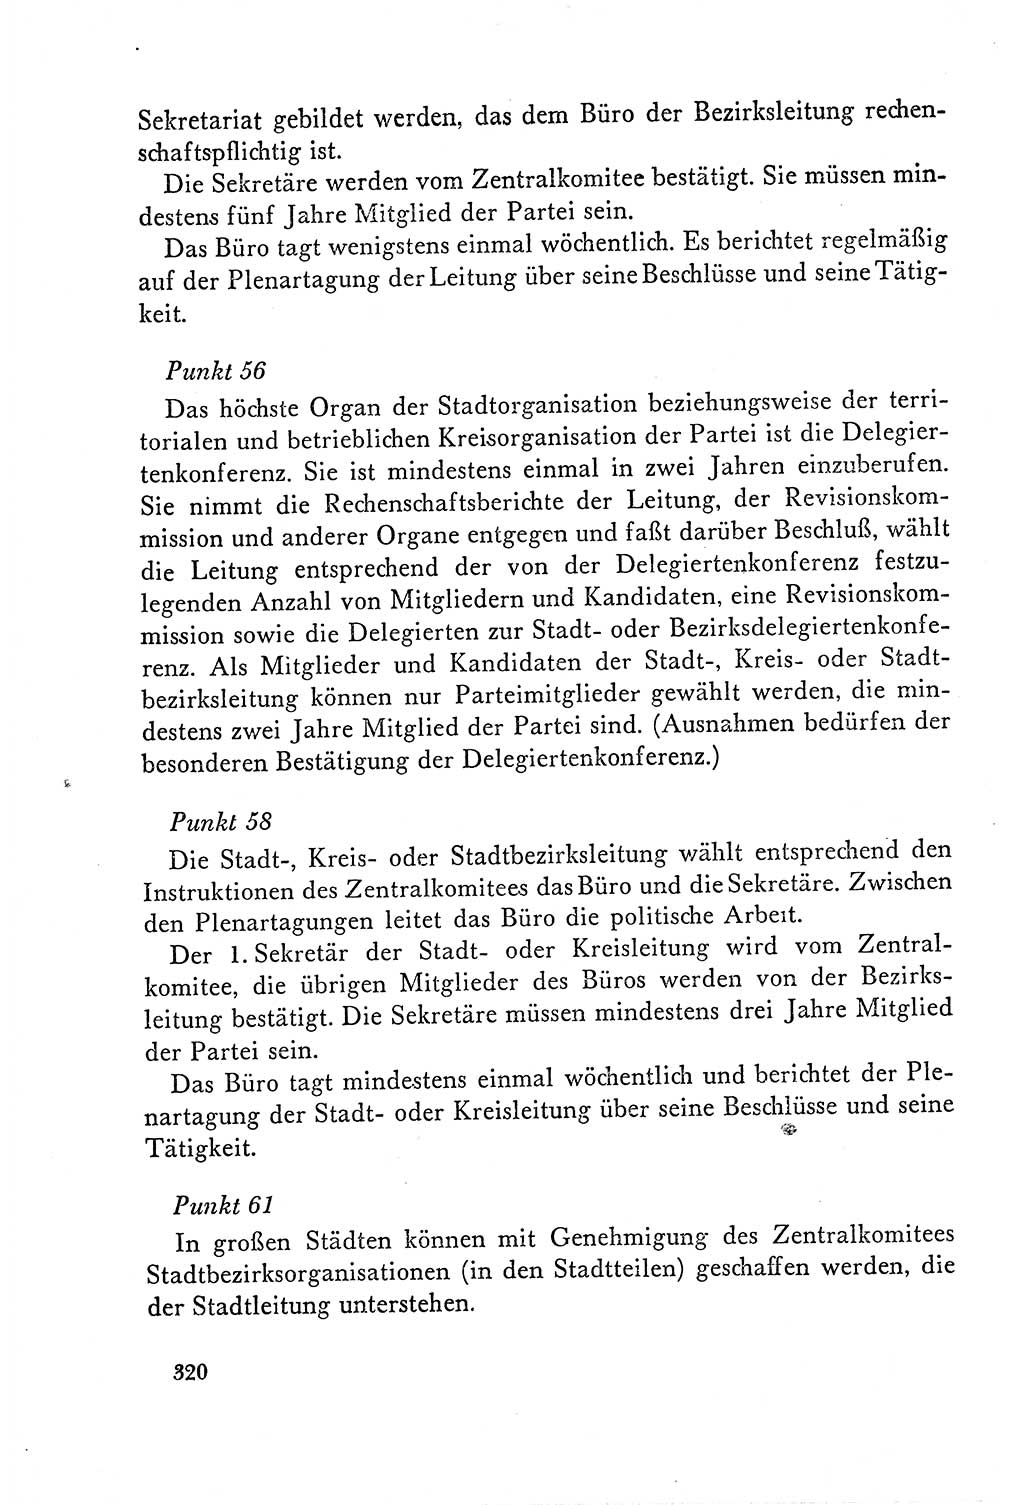 Dokumente der Sozialistischen Einheitspartei Deutschlands (SED) [Deutsche Demokratische Republik (DDR)] 1958-1959, Seite 320 (Dok. SED DDR 1958-1959, S. 320)